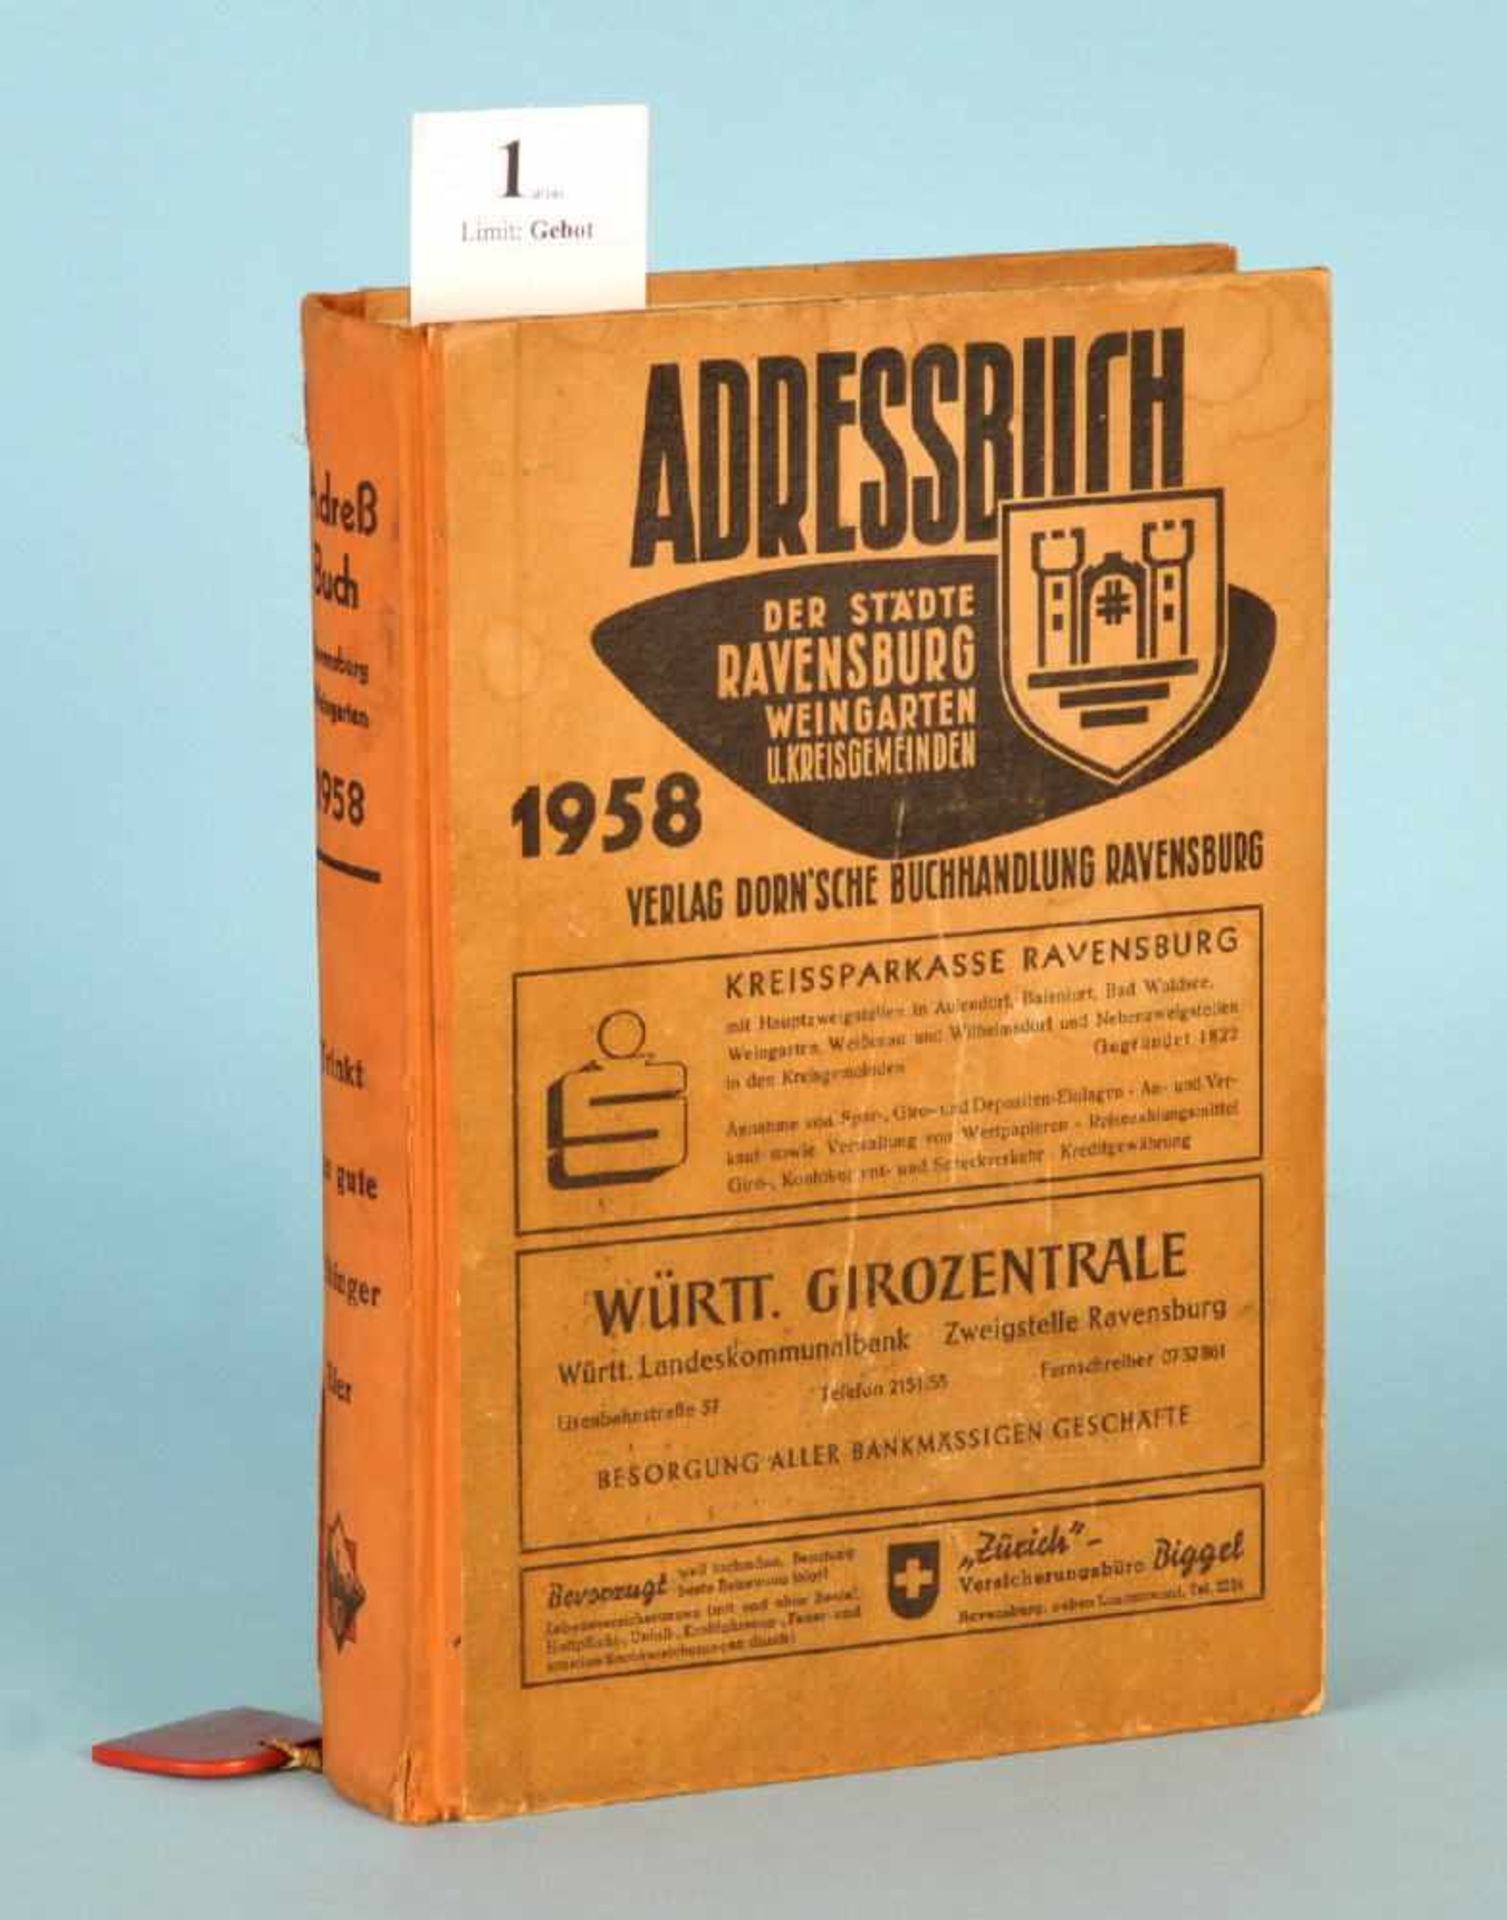 Adressbuch der Städte Ravensburg, Weingarten und…"...Kreisgemeinden 1958", 480 S., Vlg. Dorn,